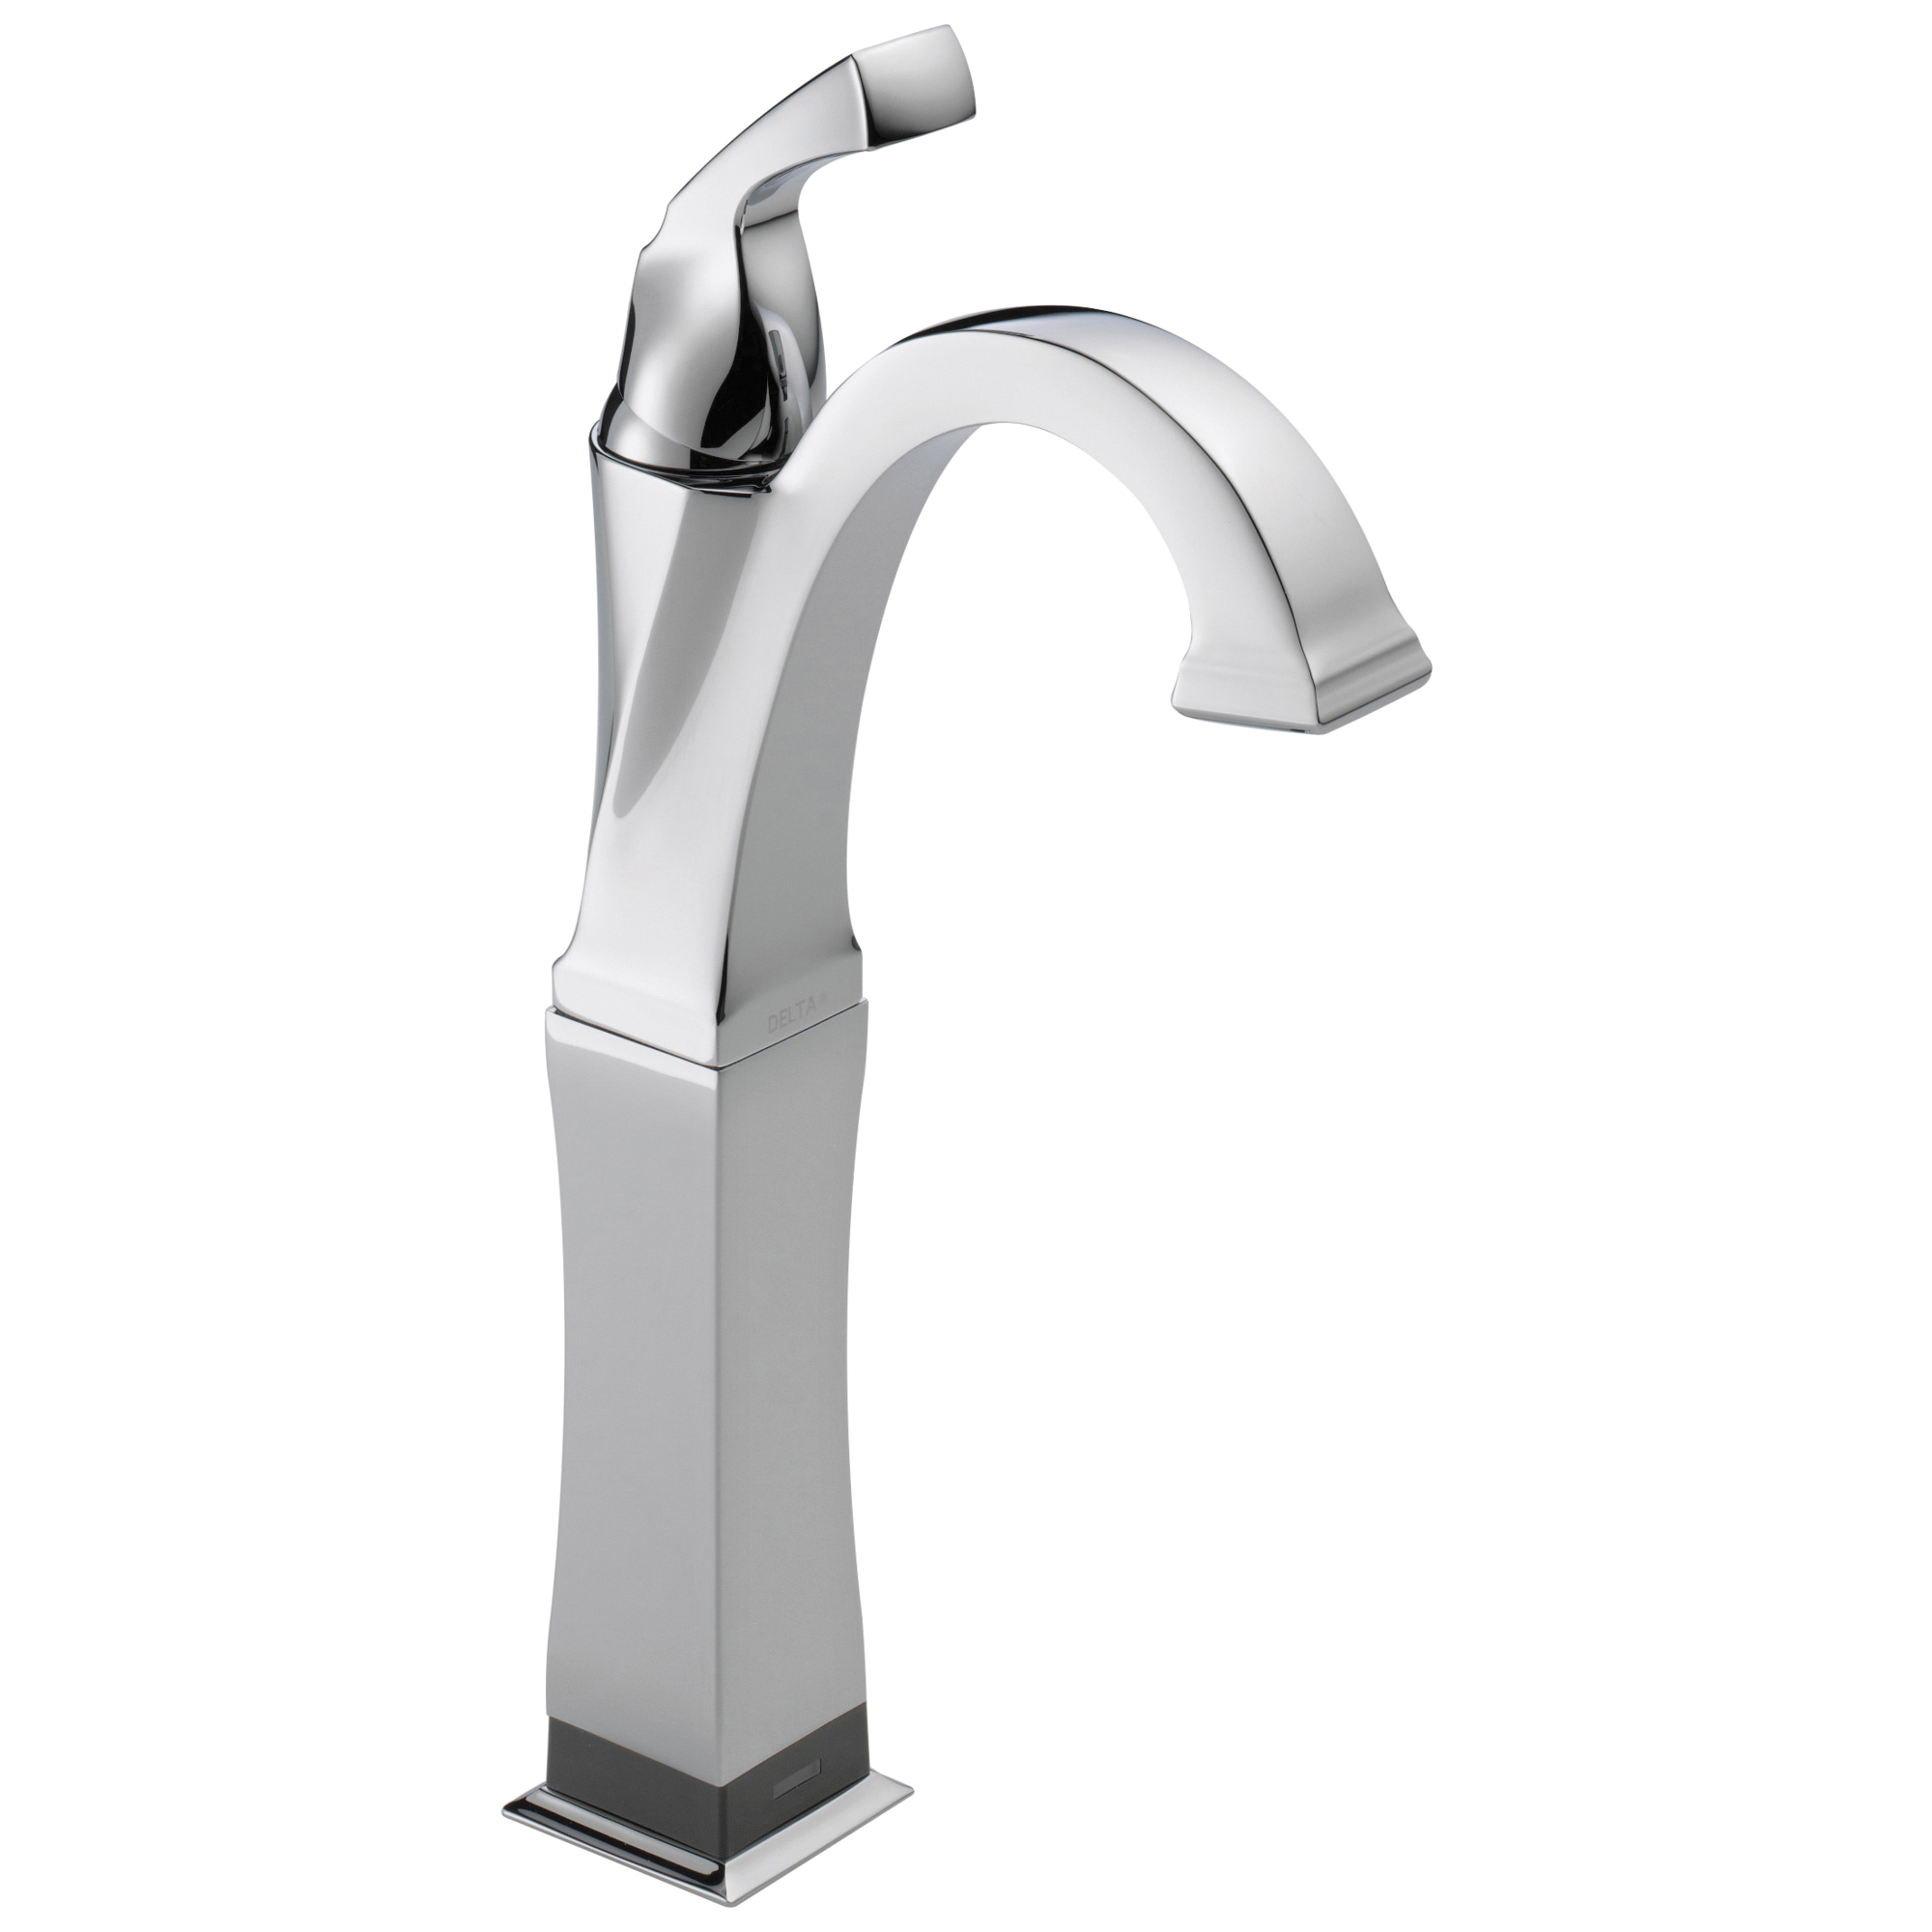 DELTA® 751T-DST Vessel Lavatory Faucet, Dryden™, Commercial, 5-3/8 in Spout, 9-1/8 in H Spout, Polished Chrome, 1 Handles, Domestic